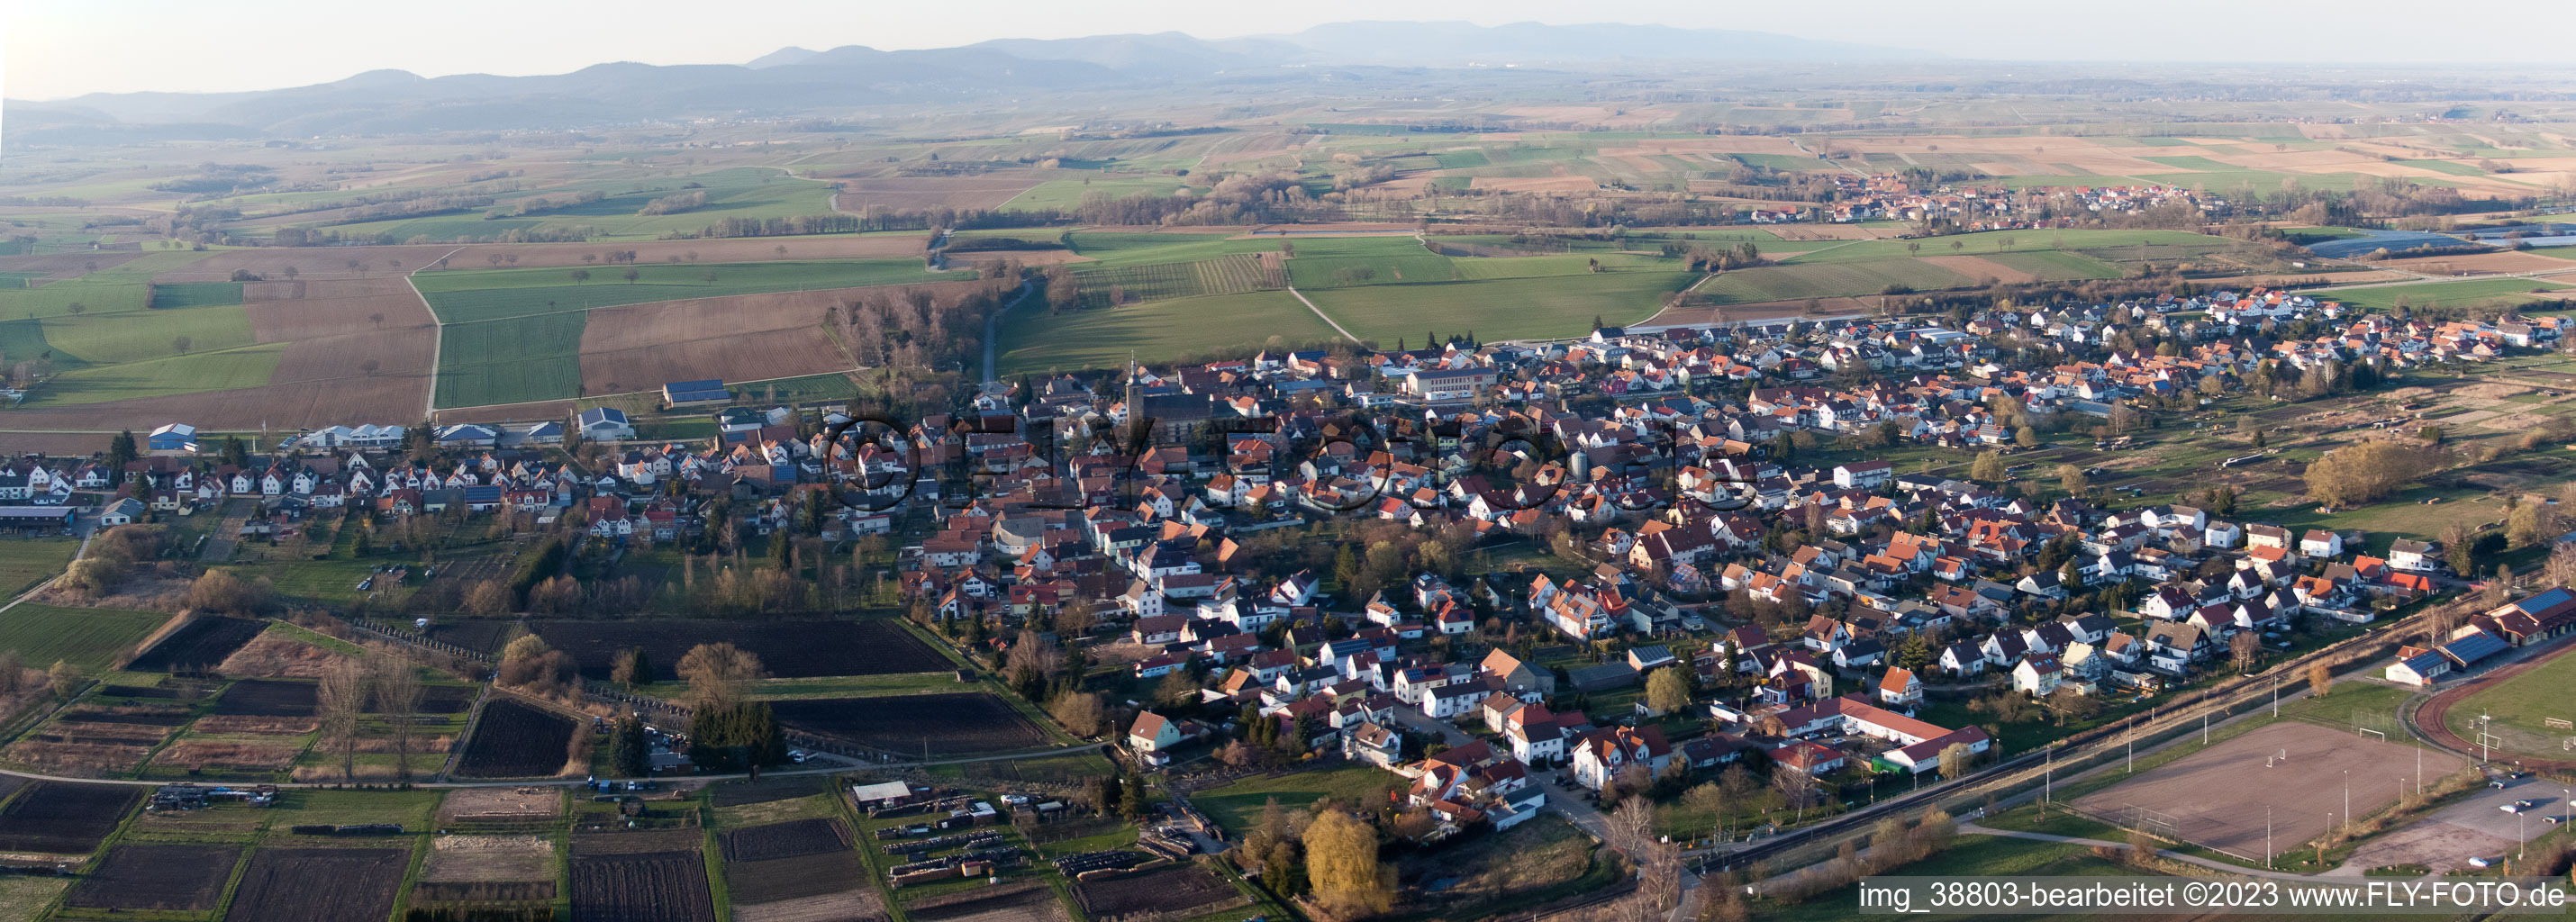 Steinfeld im Bundesland Rheinland-Pfalz, Deutschland von oben gesehen